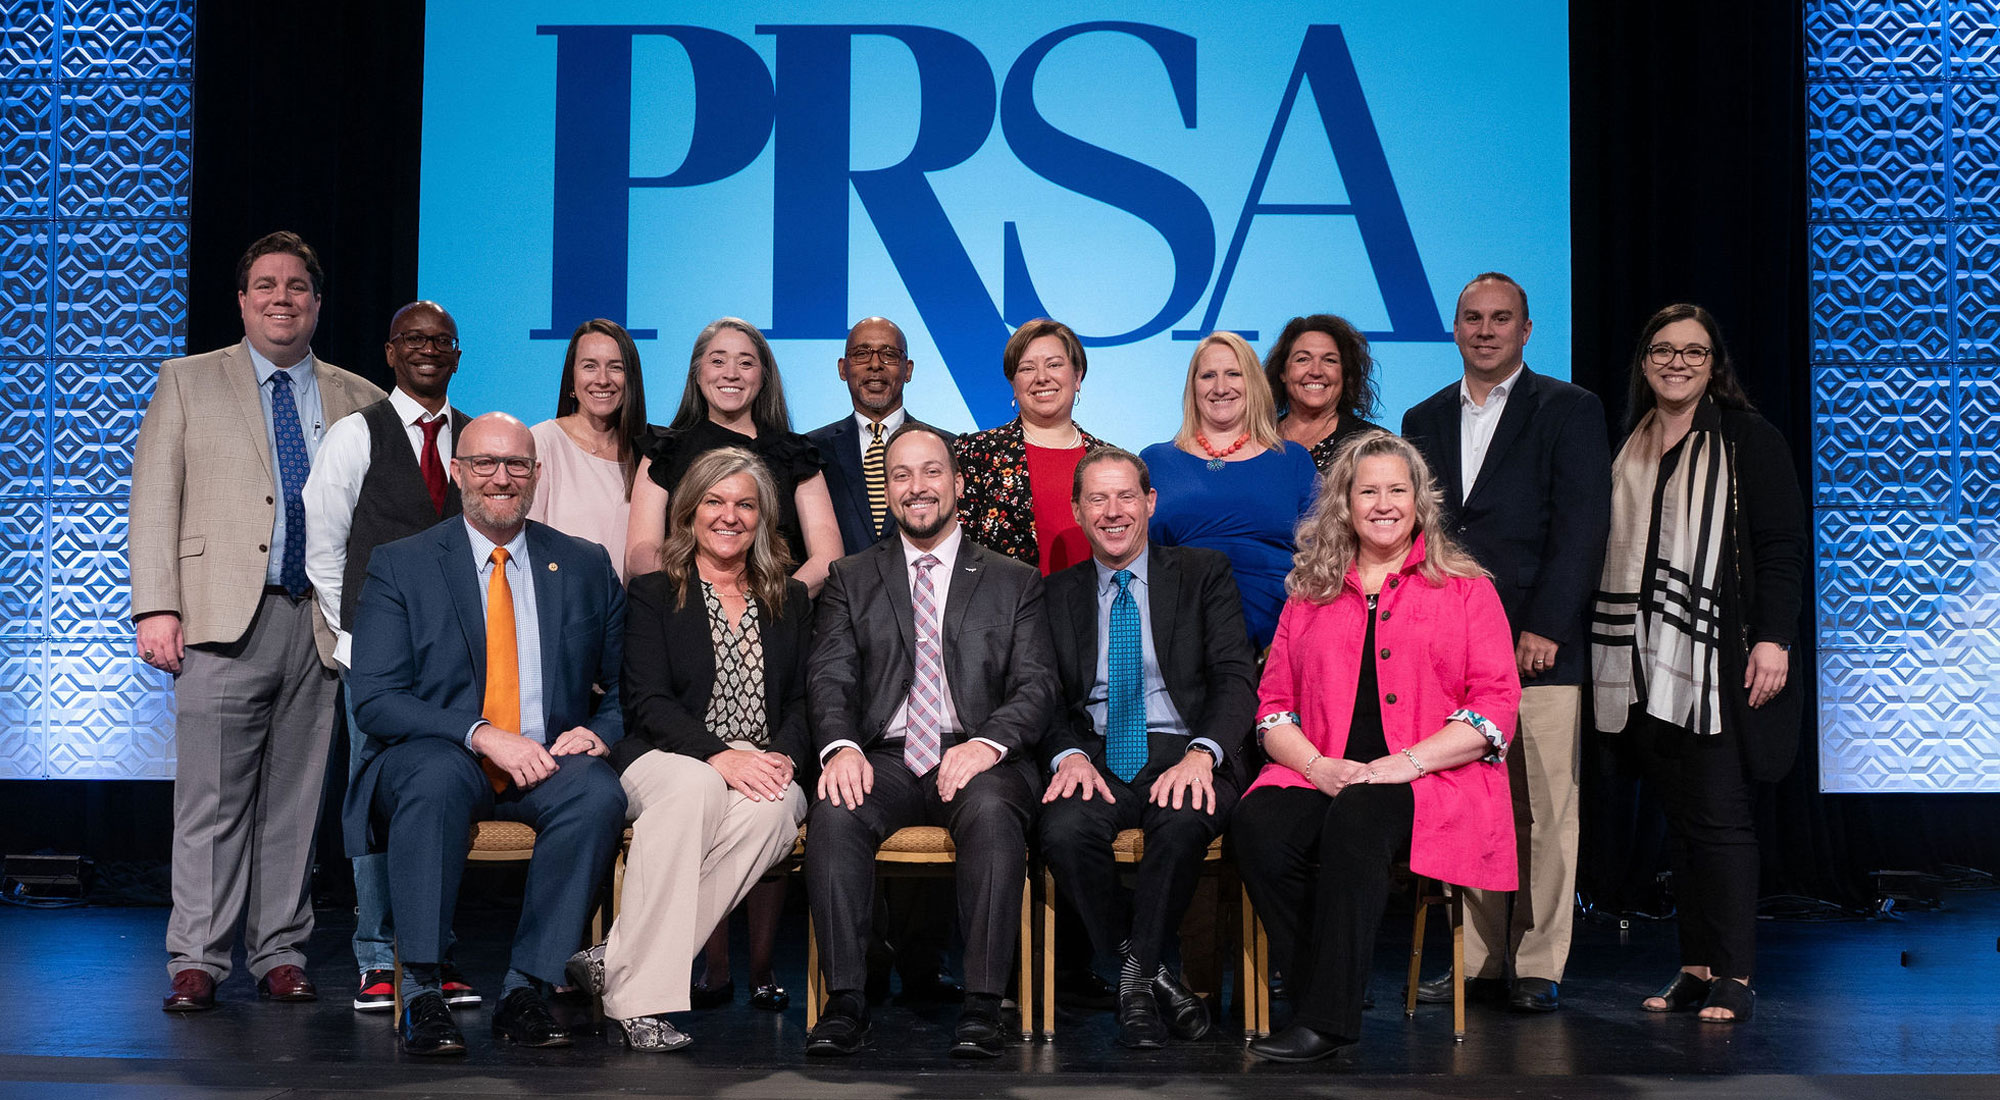 group shot of PRSA board members onstage